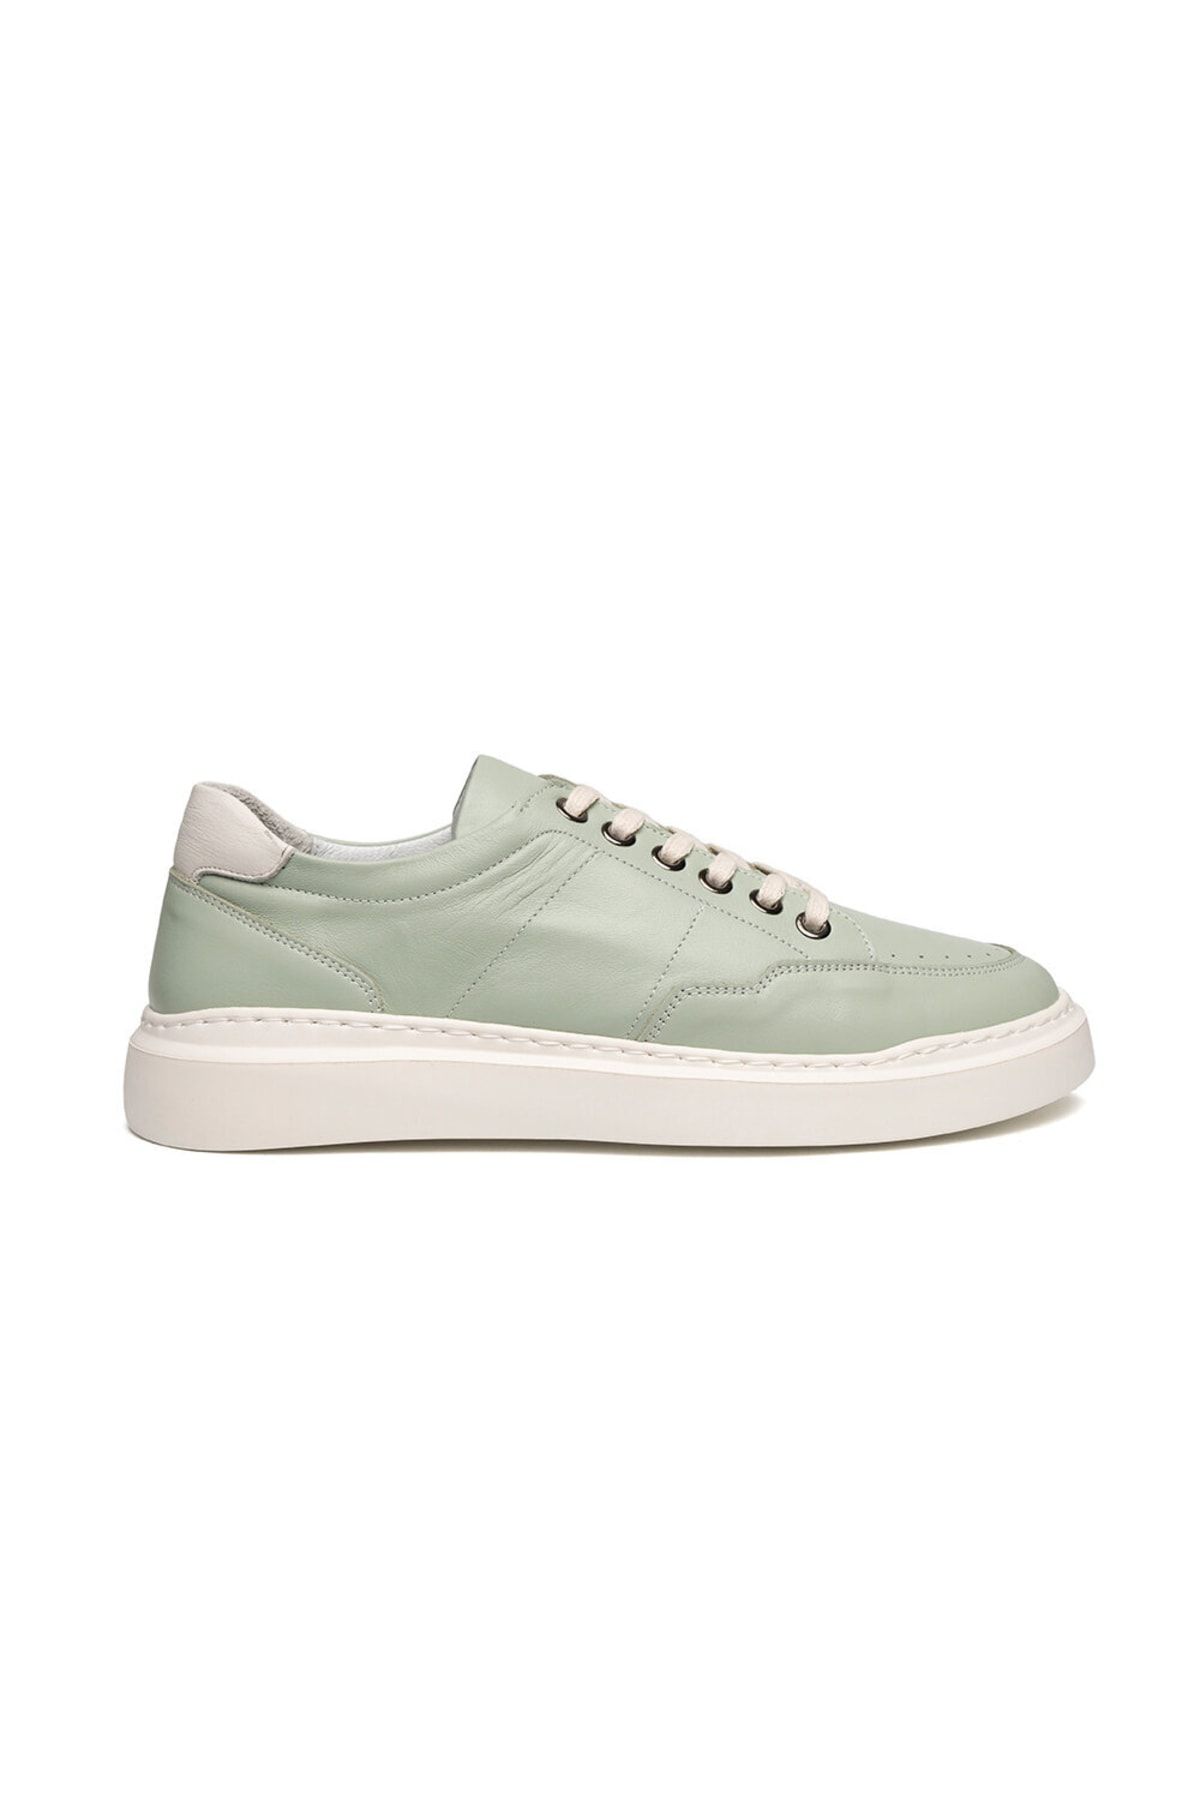 Greyder Kadın Açık Yeşil Hakiki Deri Sneaker Ayakkabı 2y2sa57922